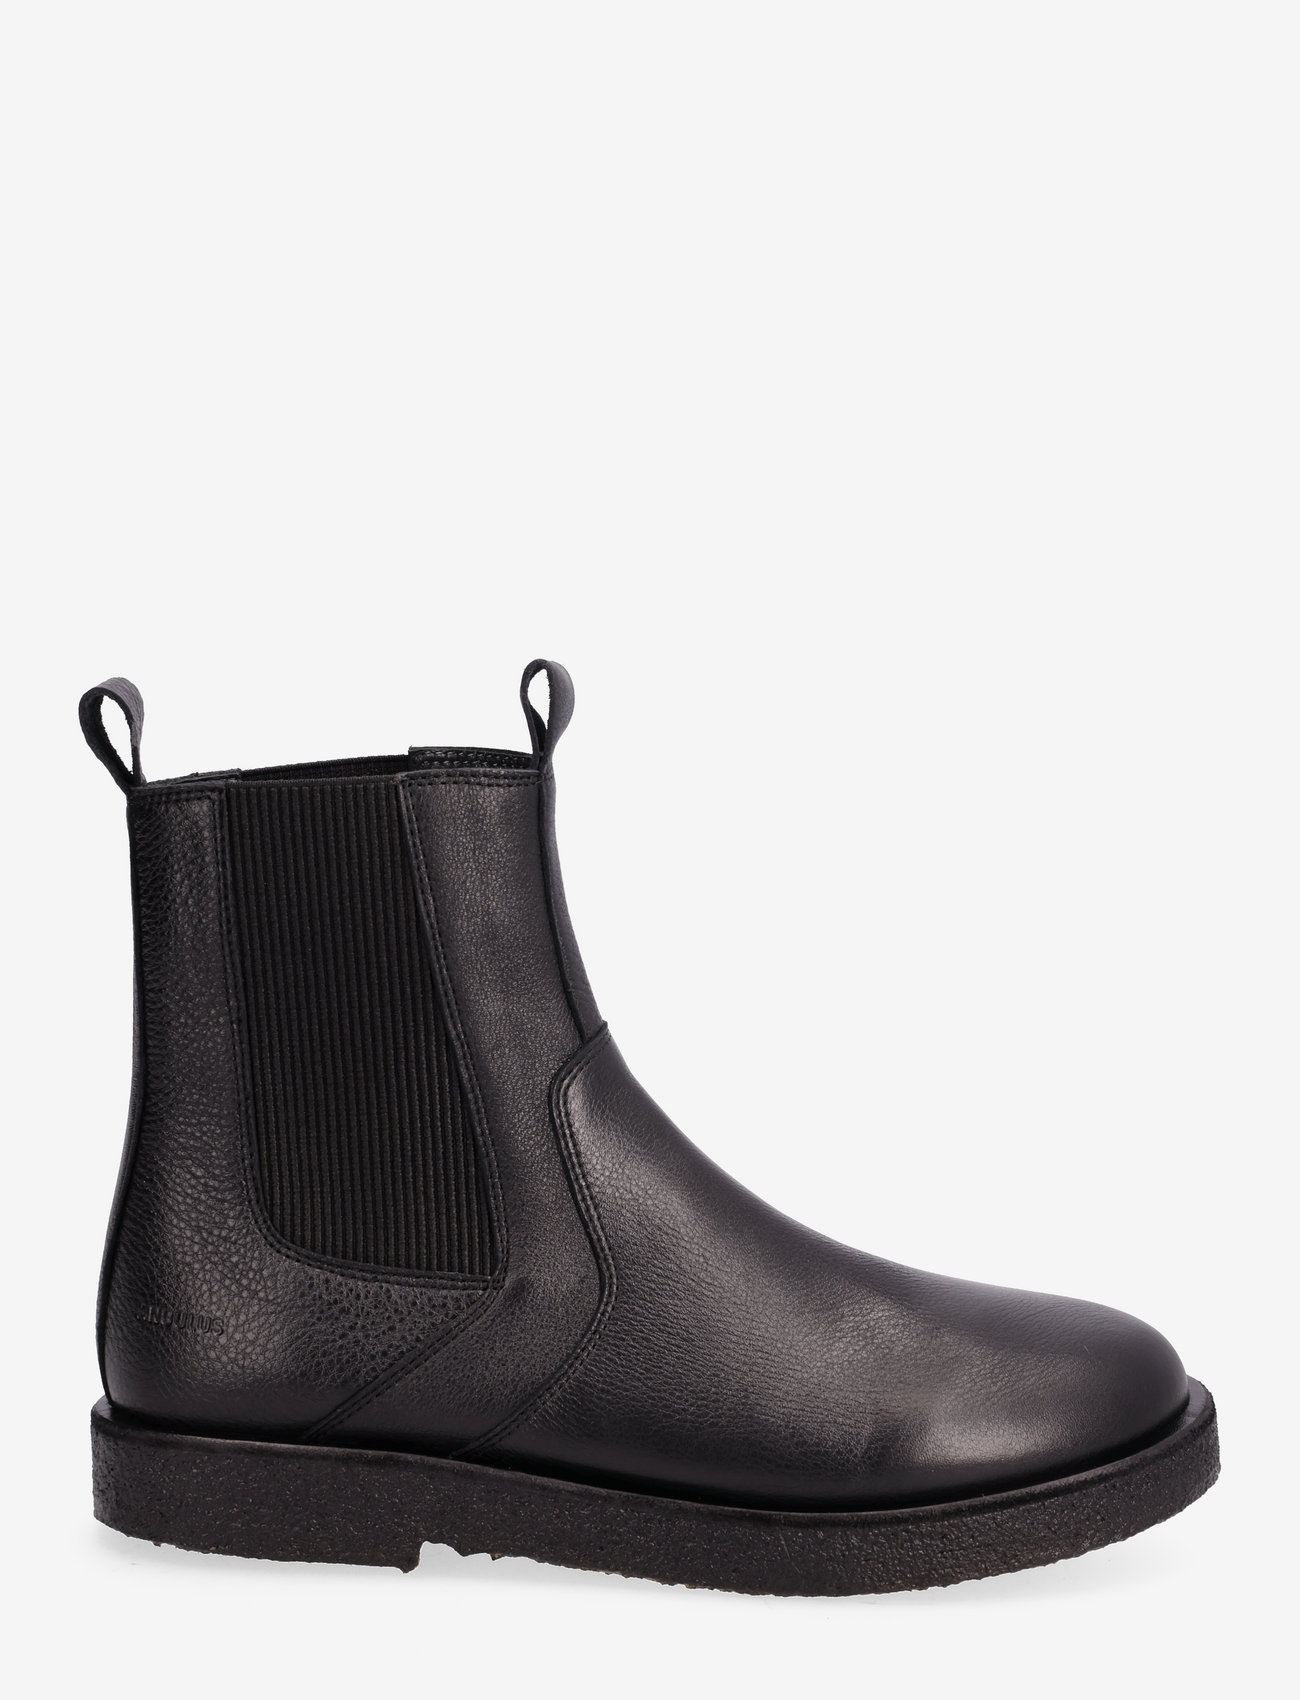 ANGULUS - Boots - flat - chelsea boots - 1933/019 black/black - 1